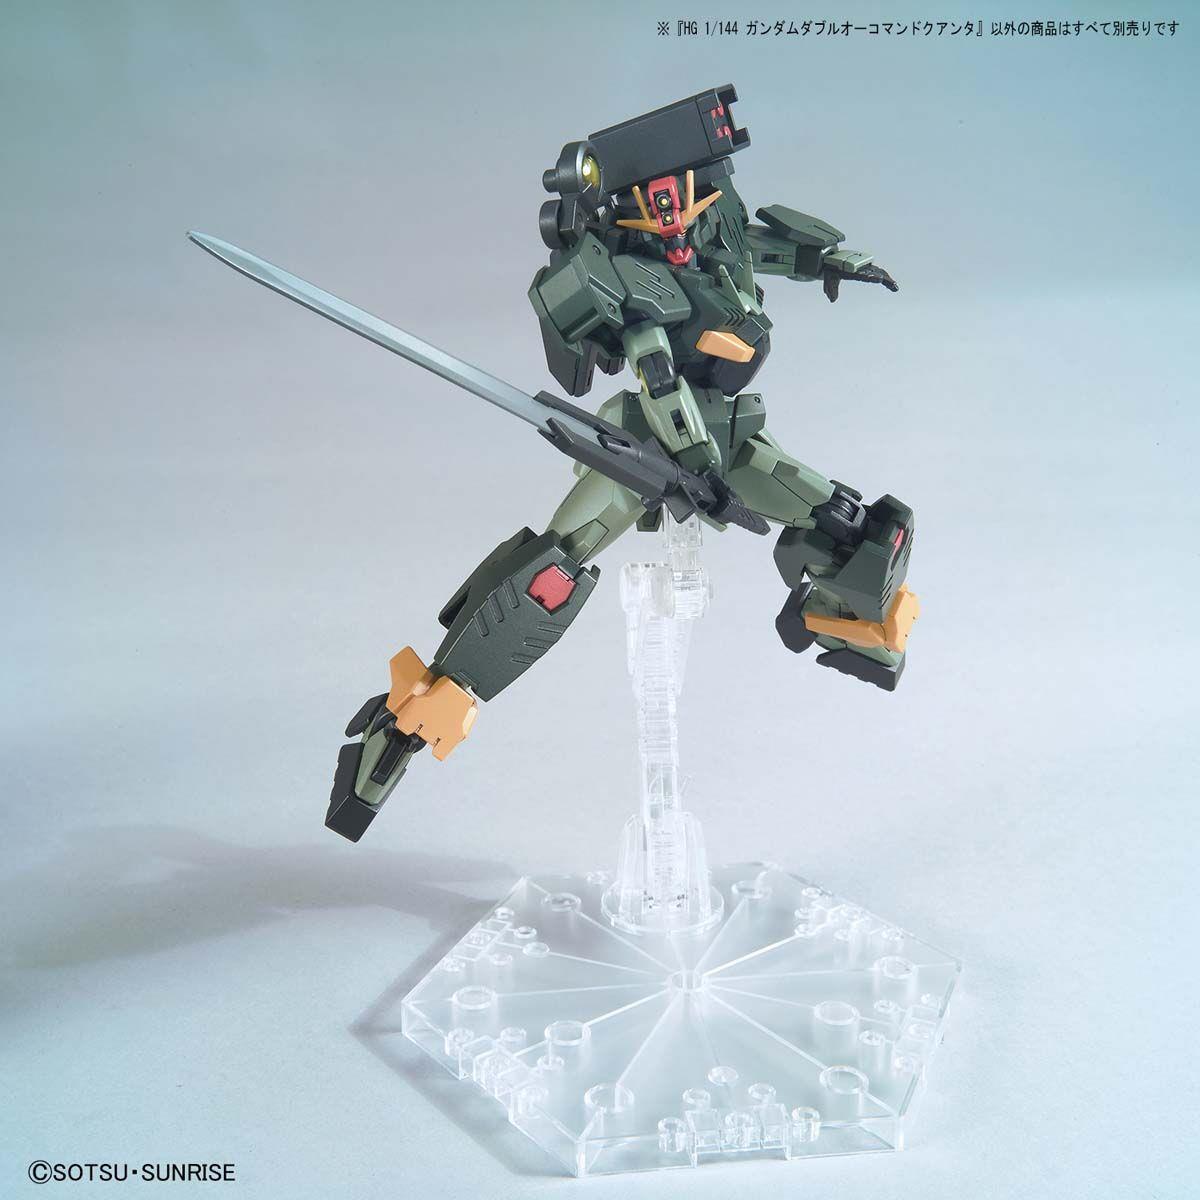 Gundam: Gundam 00 Command Qan[T] HG Model